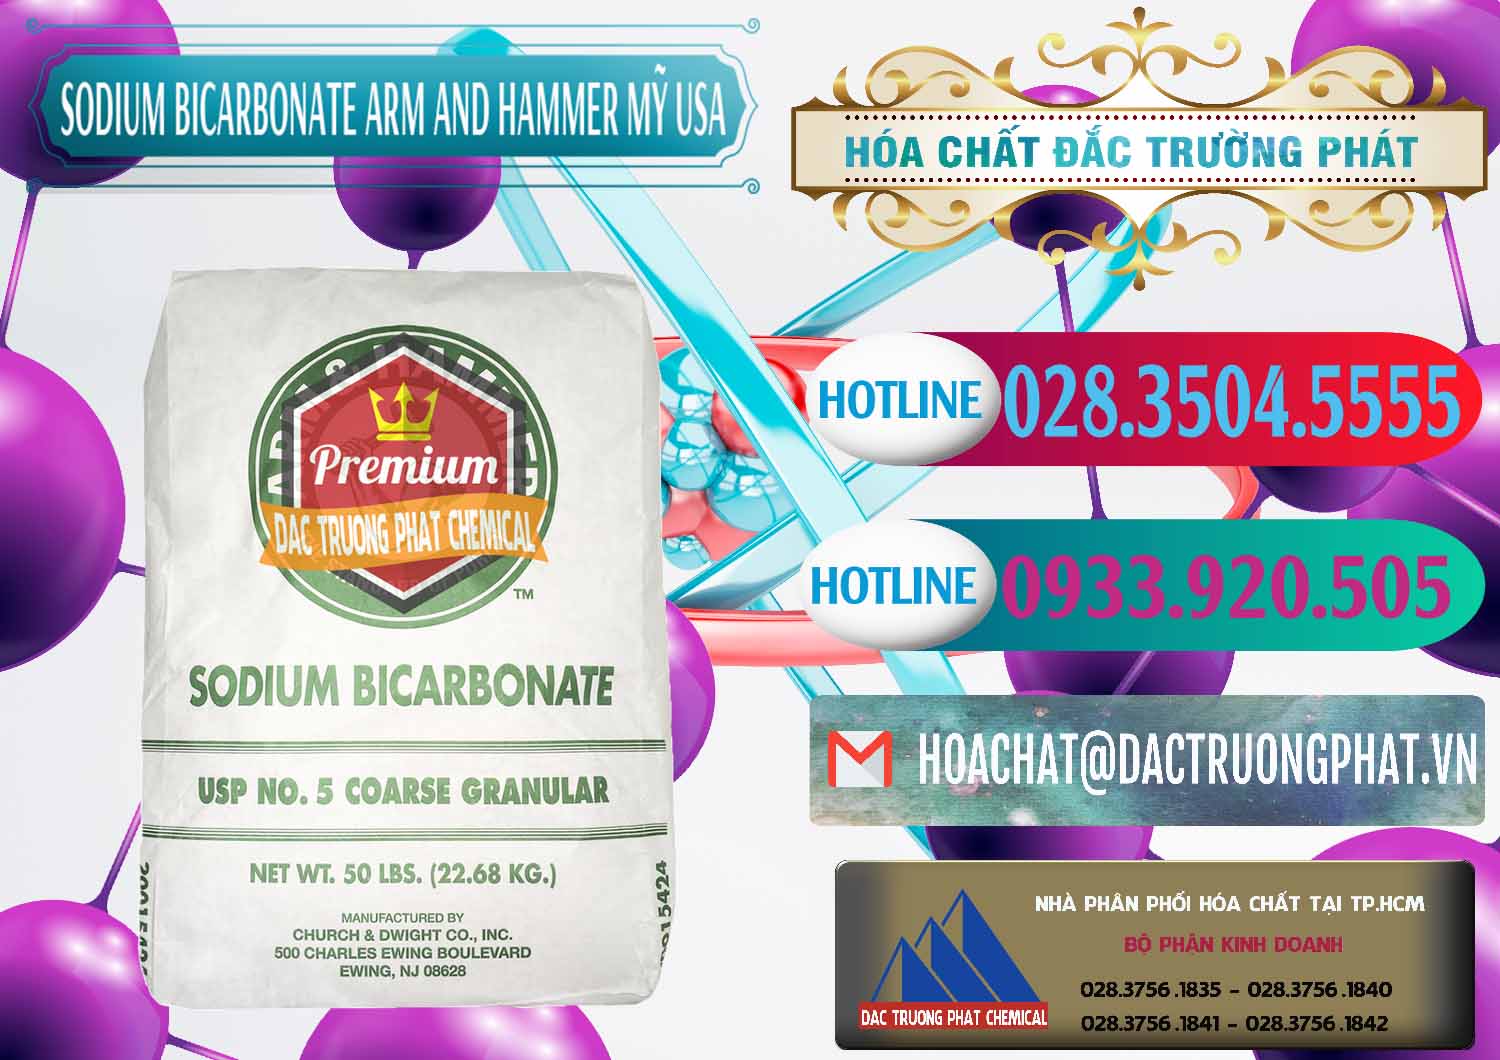 Công ty chuyên kinh doanh & bán Sodium Bicarbonate – Bicar NaHCO3 Food Grade Arm And Hammer Mỹ USA - 0255 - Cty chuyên kinh doanh - cung cấp hóa chất tại TP.HCM - truongphat.vn